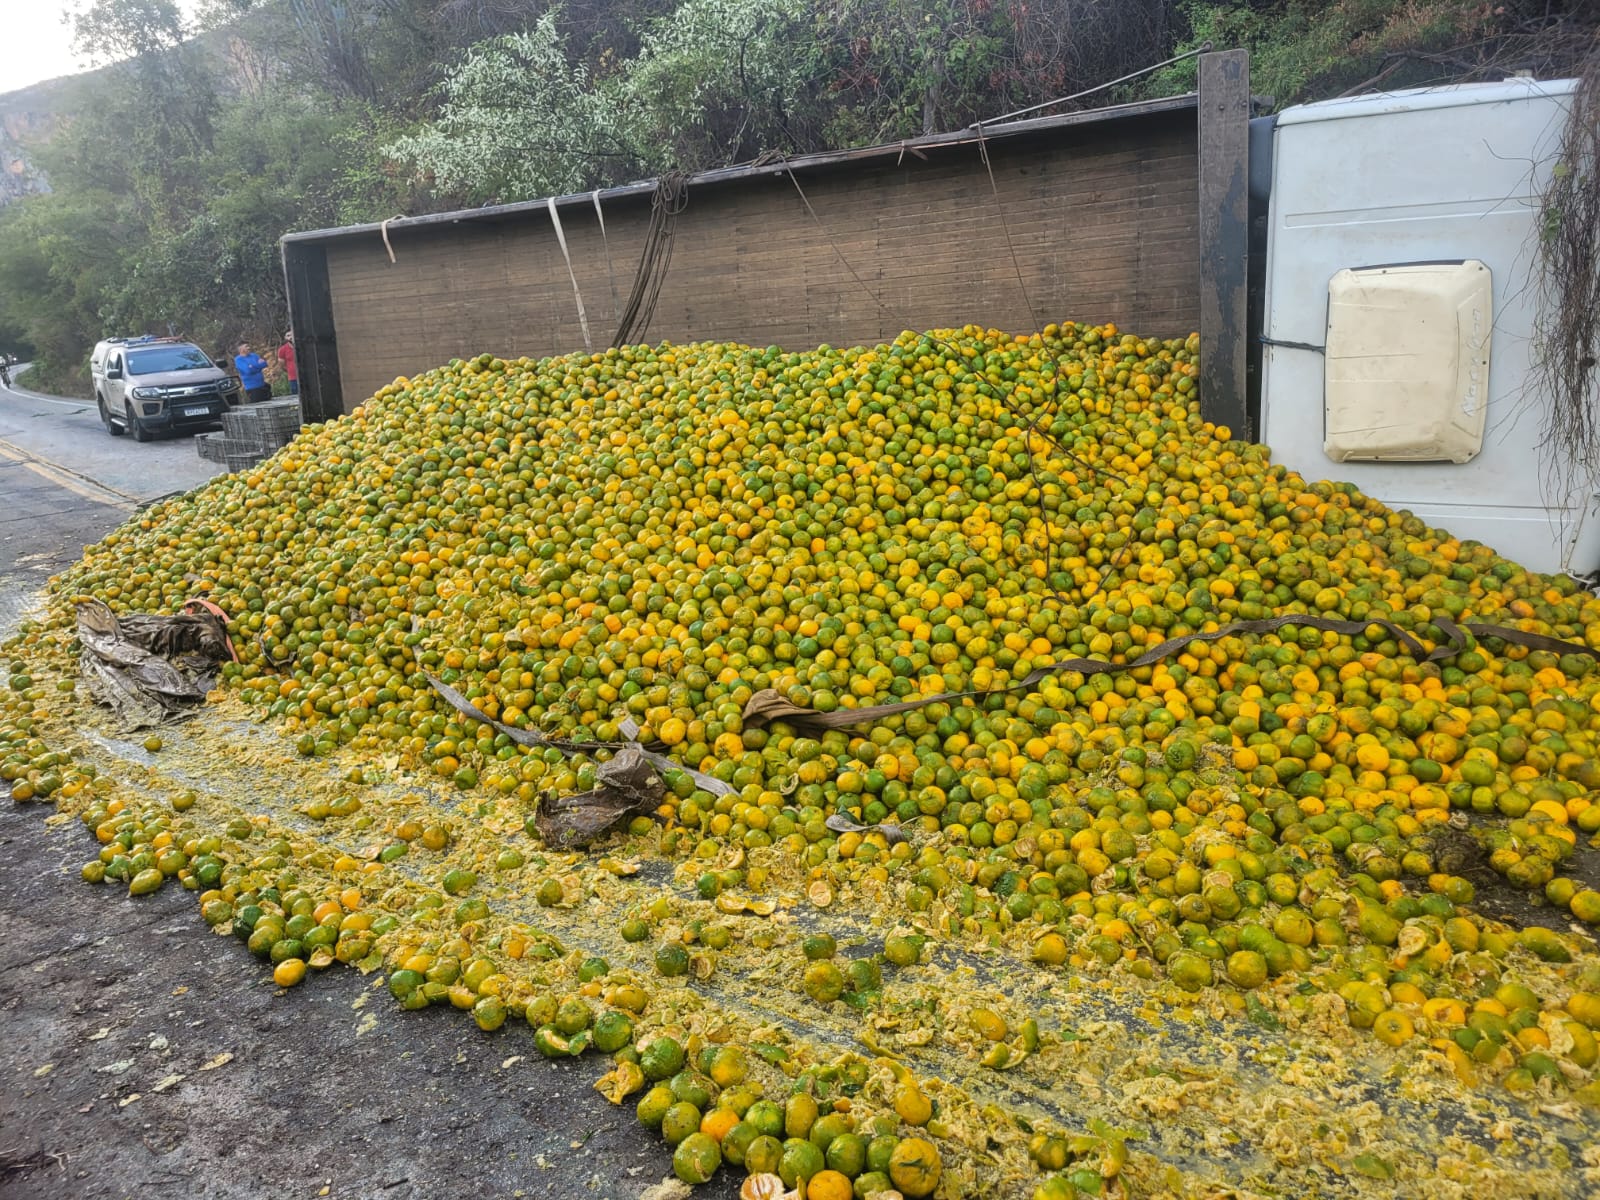 Caminhão carregado de laranjas tomba na BA-148 entre Livramento e Rio de Contas